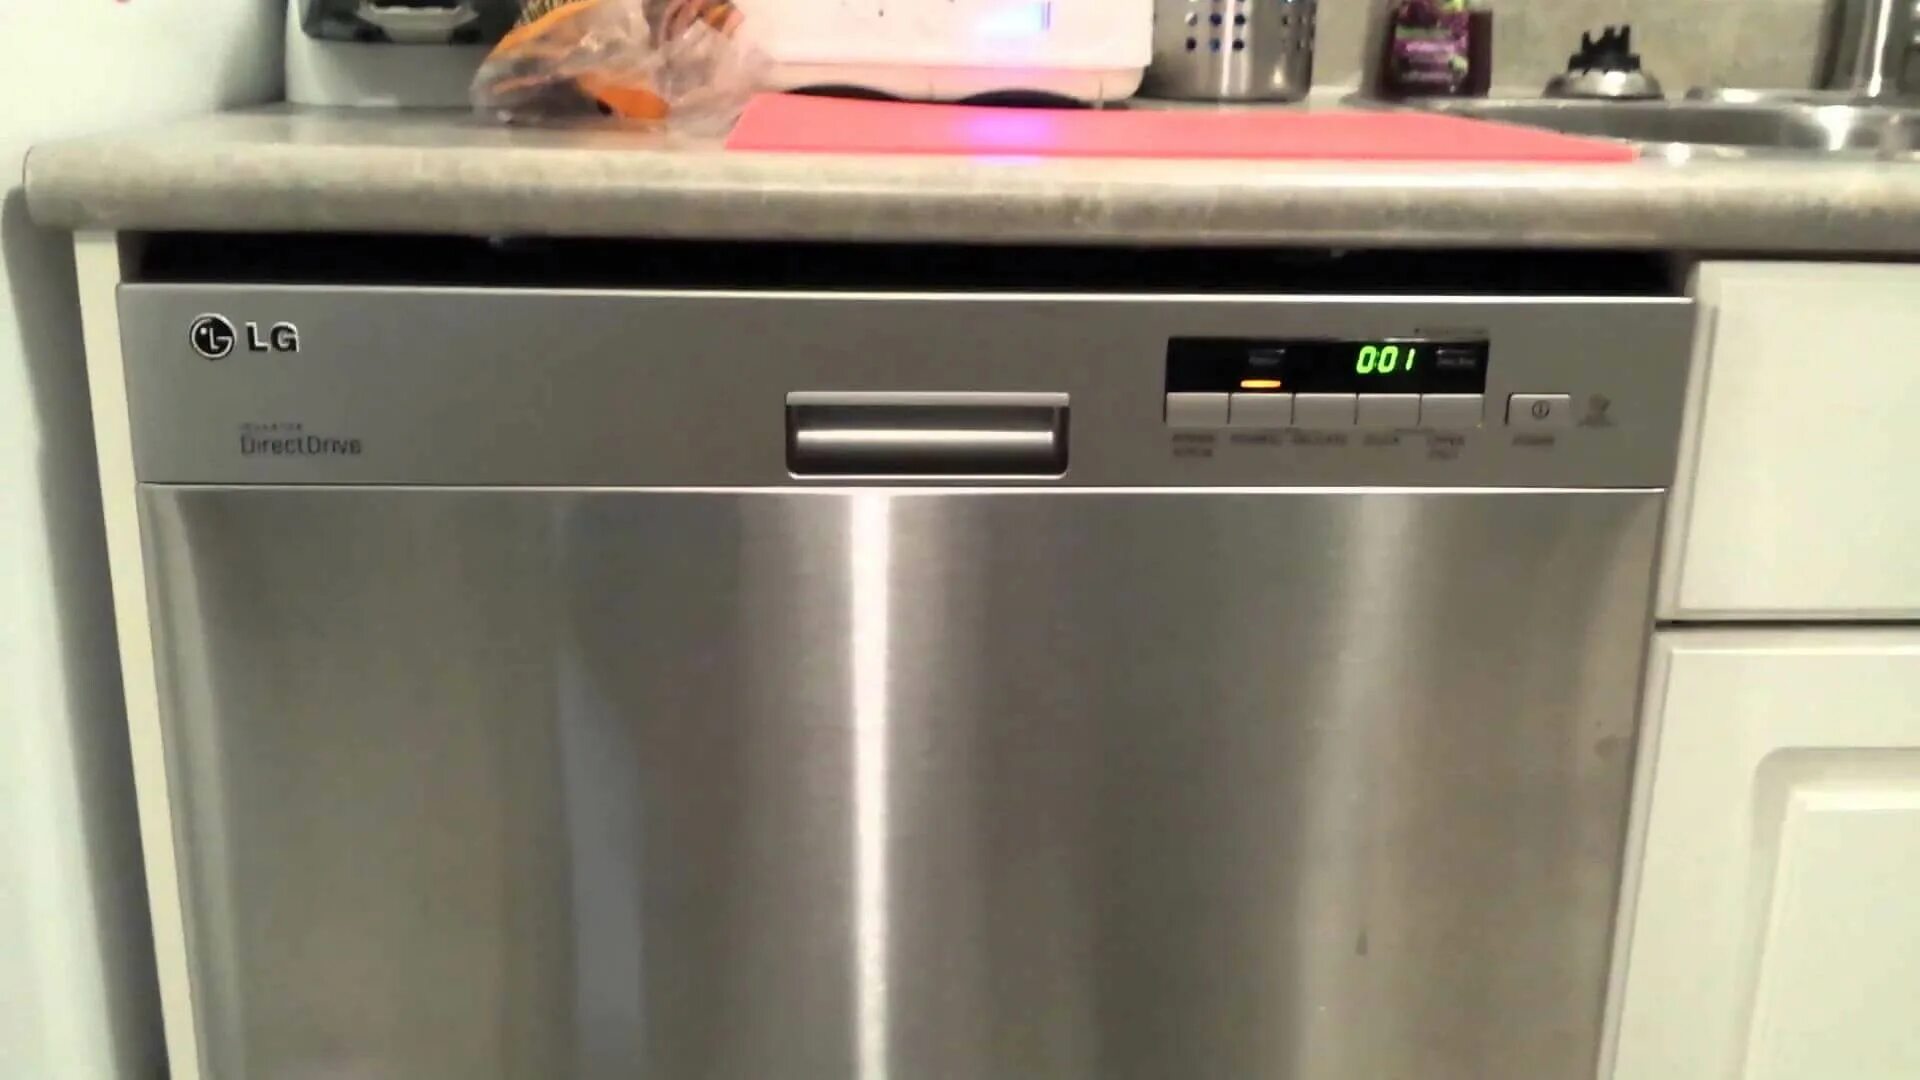 Посудомоечная машина LG D-1452wf. Ldt5665bd LG Dishwasher Price. Старая посудомойка LG. Посудомоечная машина LG табло.